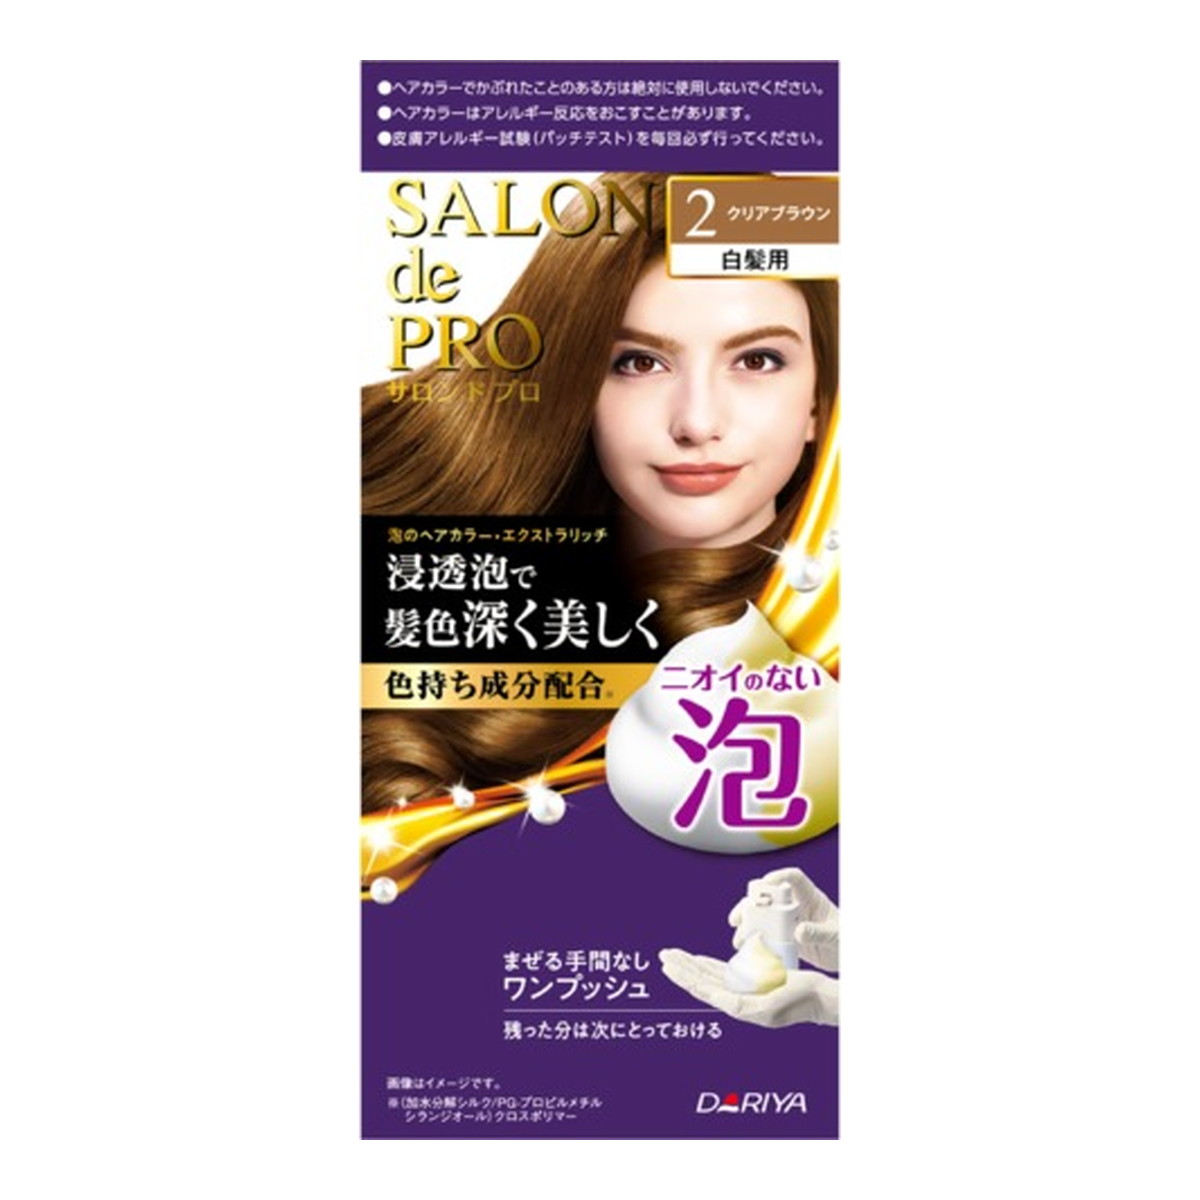 ダリヤ サロンドプロ 泡のヘアカラー エクストラリッチ 白髪用 2 クリアブラウン ランキングや新製品